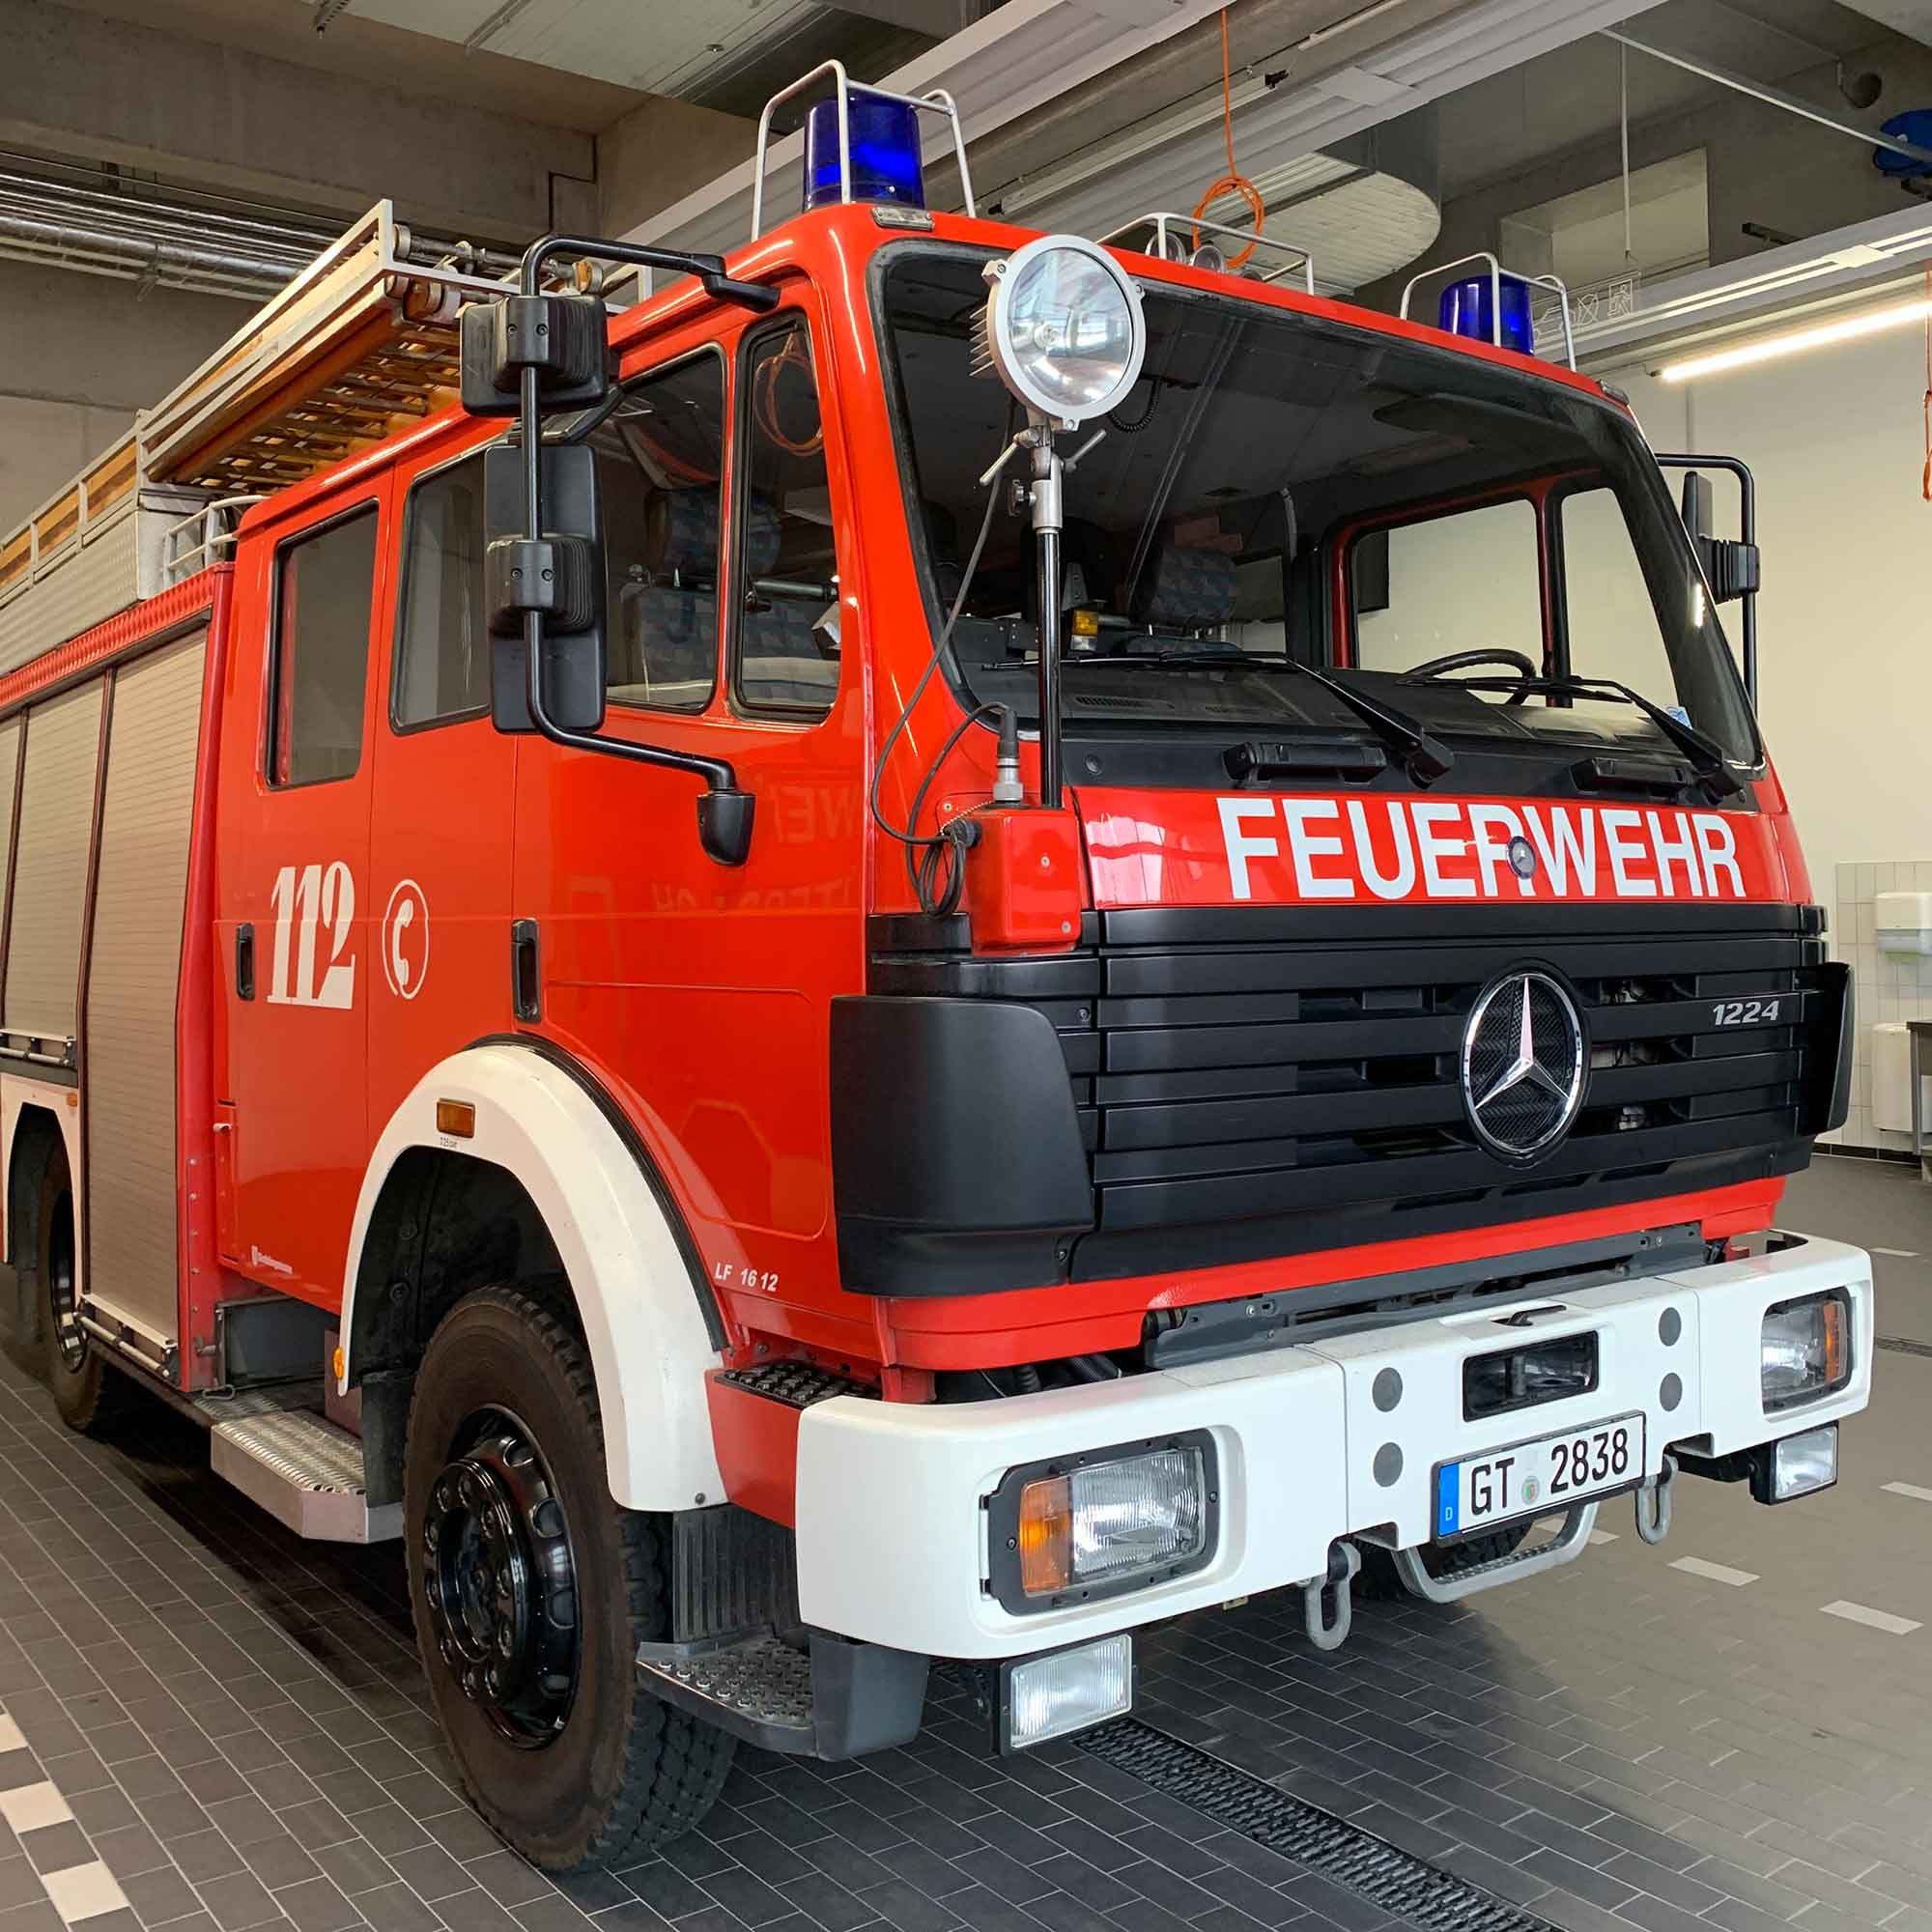 Gütersloher Feuerwehrfahrzeug hilft in Zukunft in der Ukraine